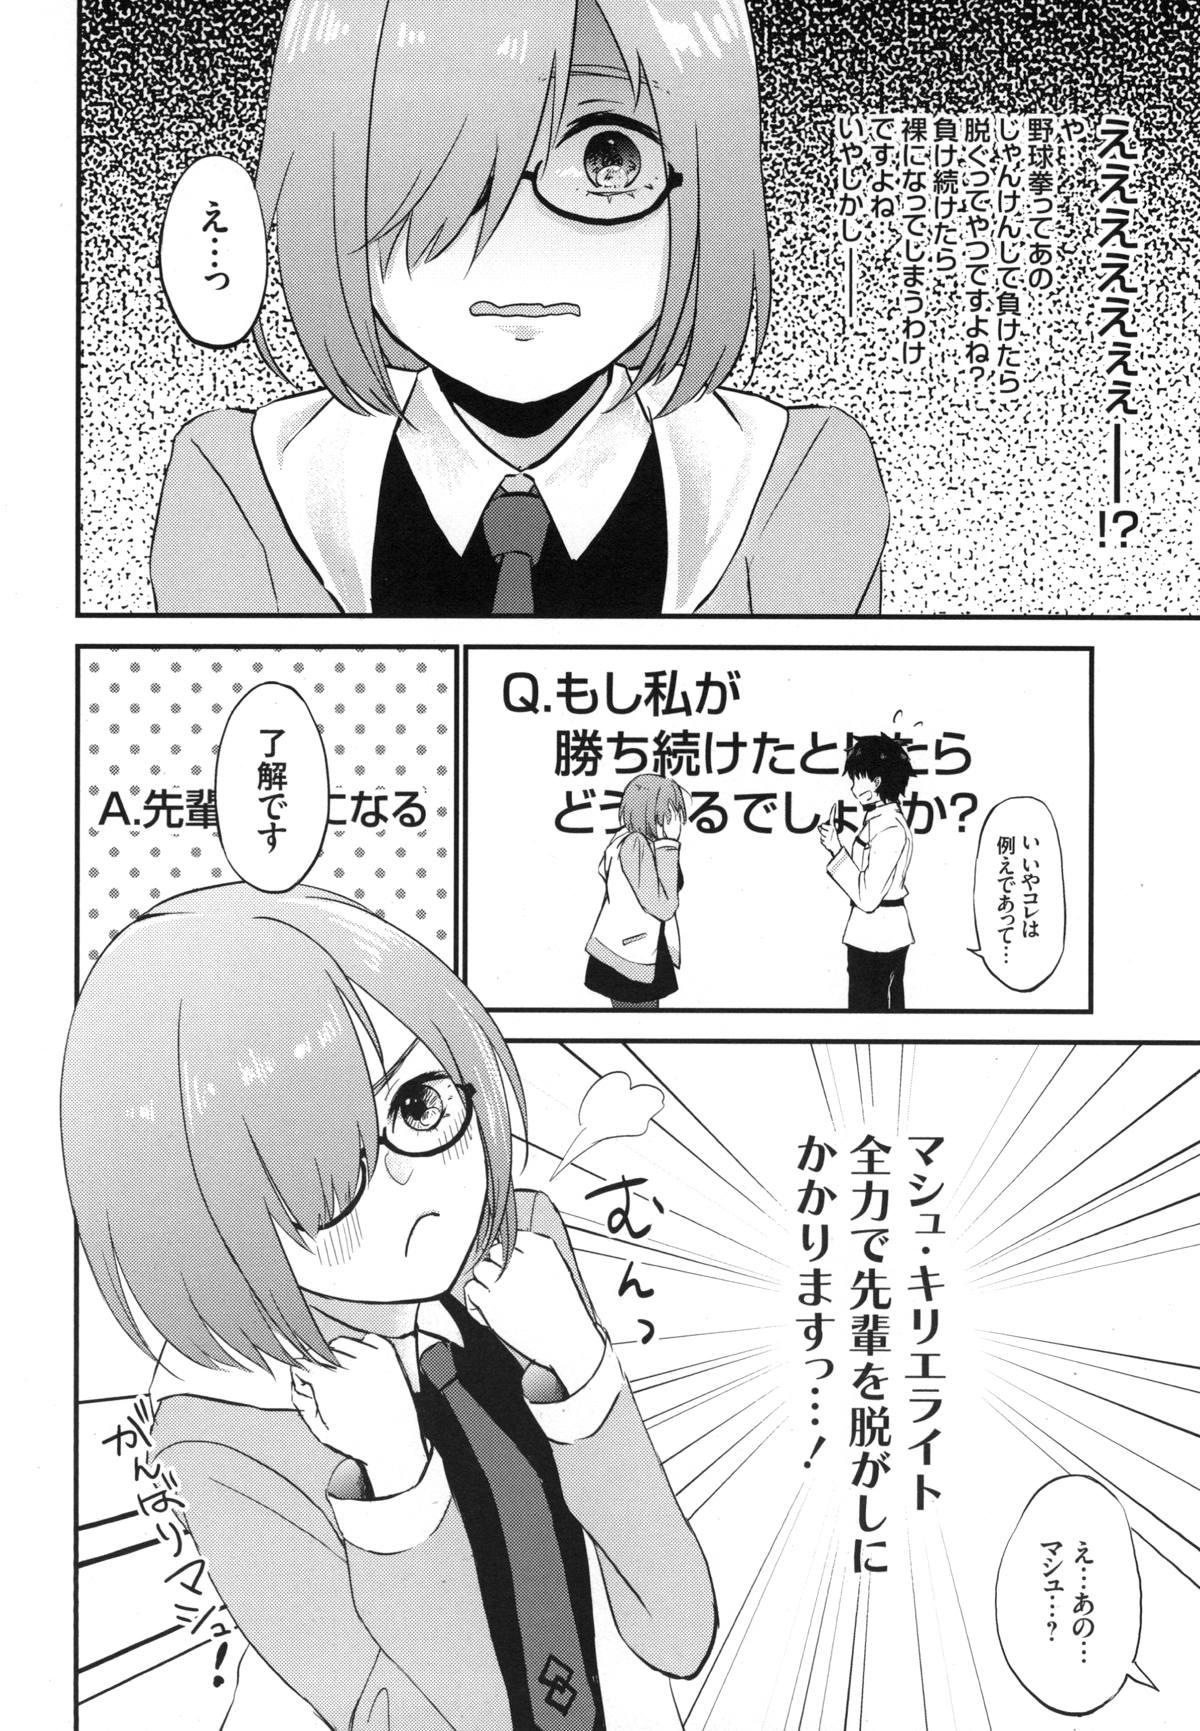 Wam Mash no Migite wa Saijaku desu!? - Fate grand order Hairypussy - Page 5